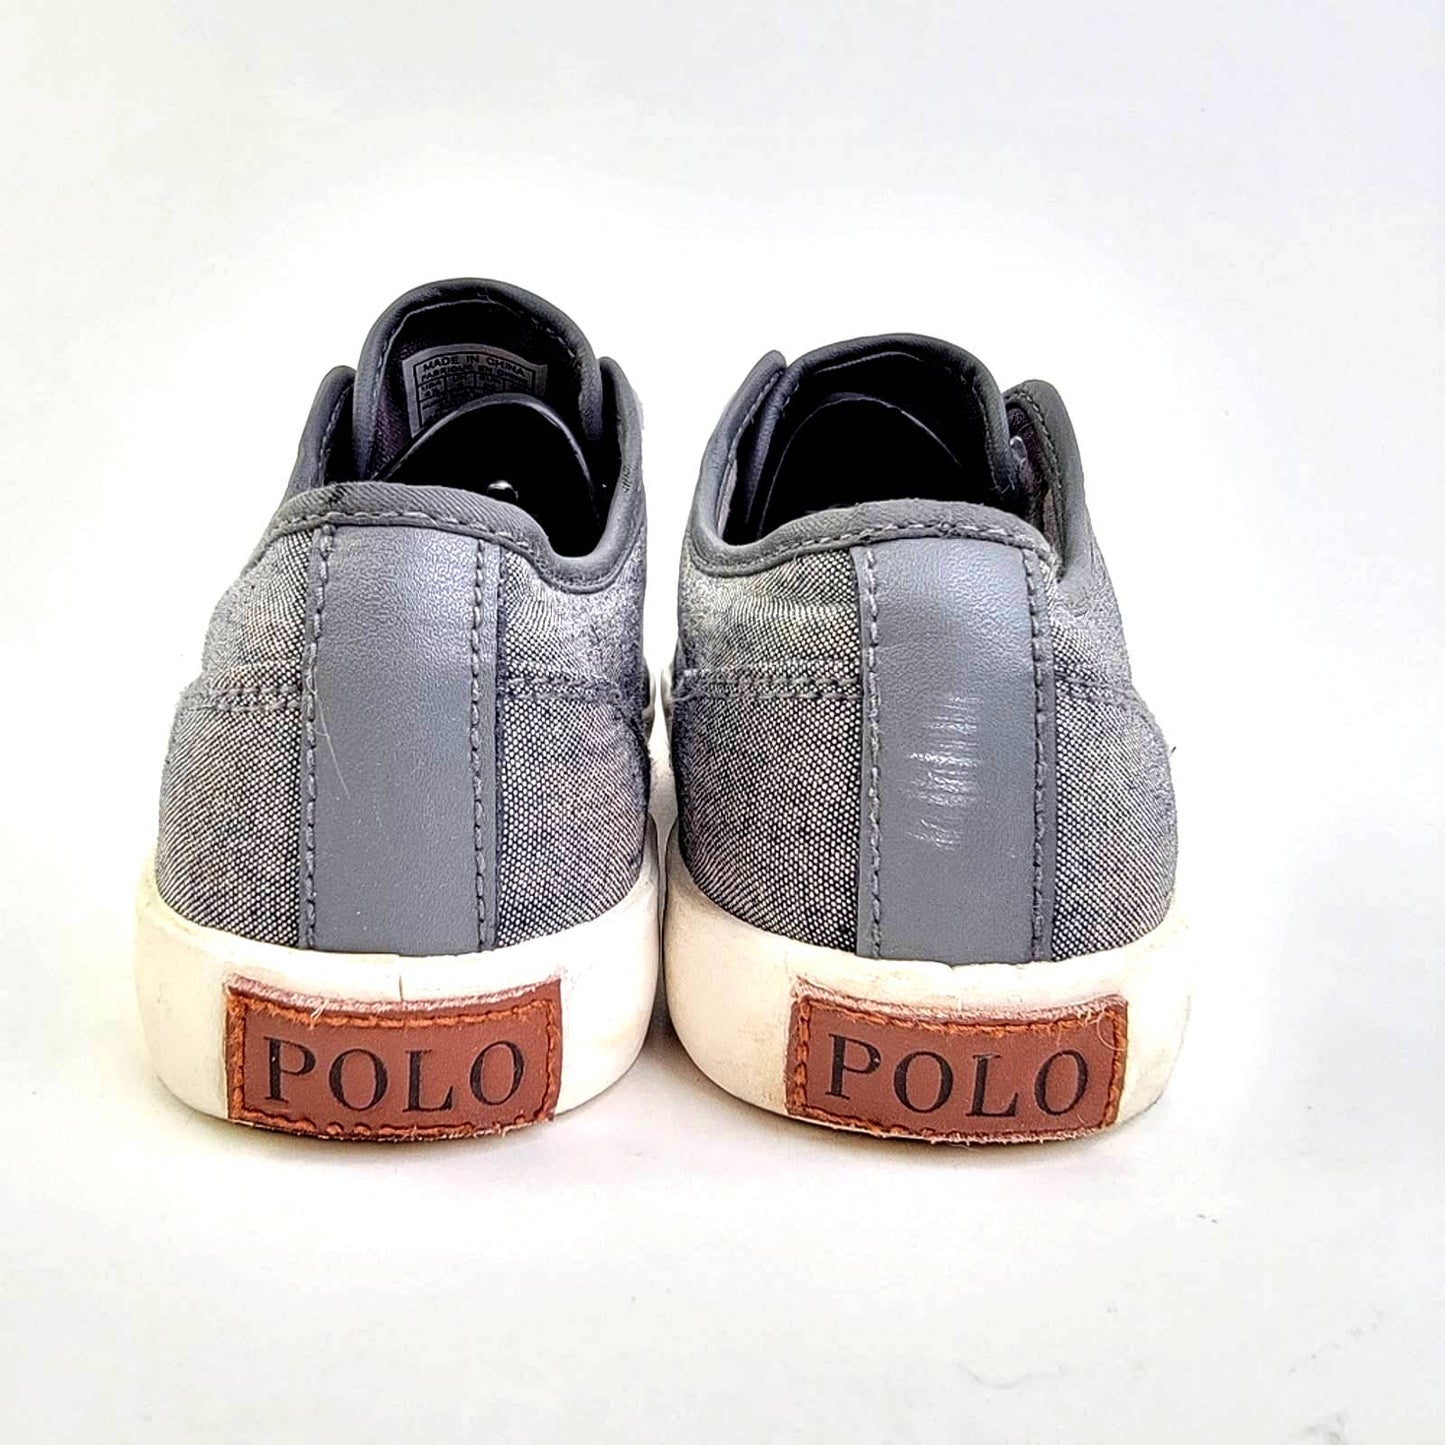 Polo Ralph Lauren Low Top Sneakers - 4.5